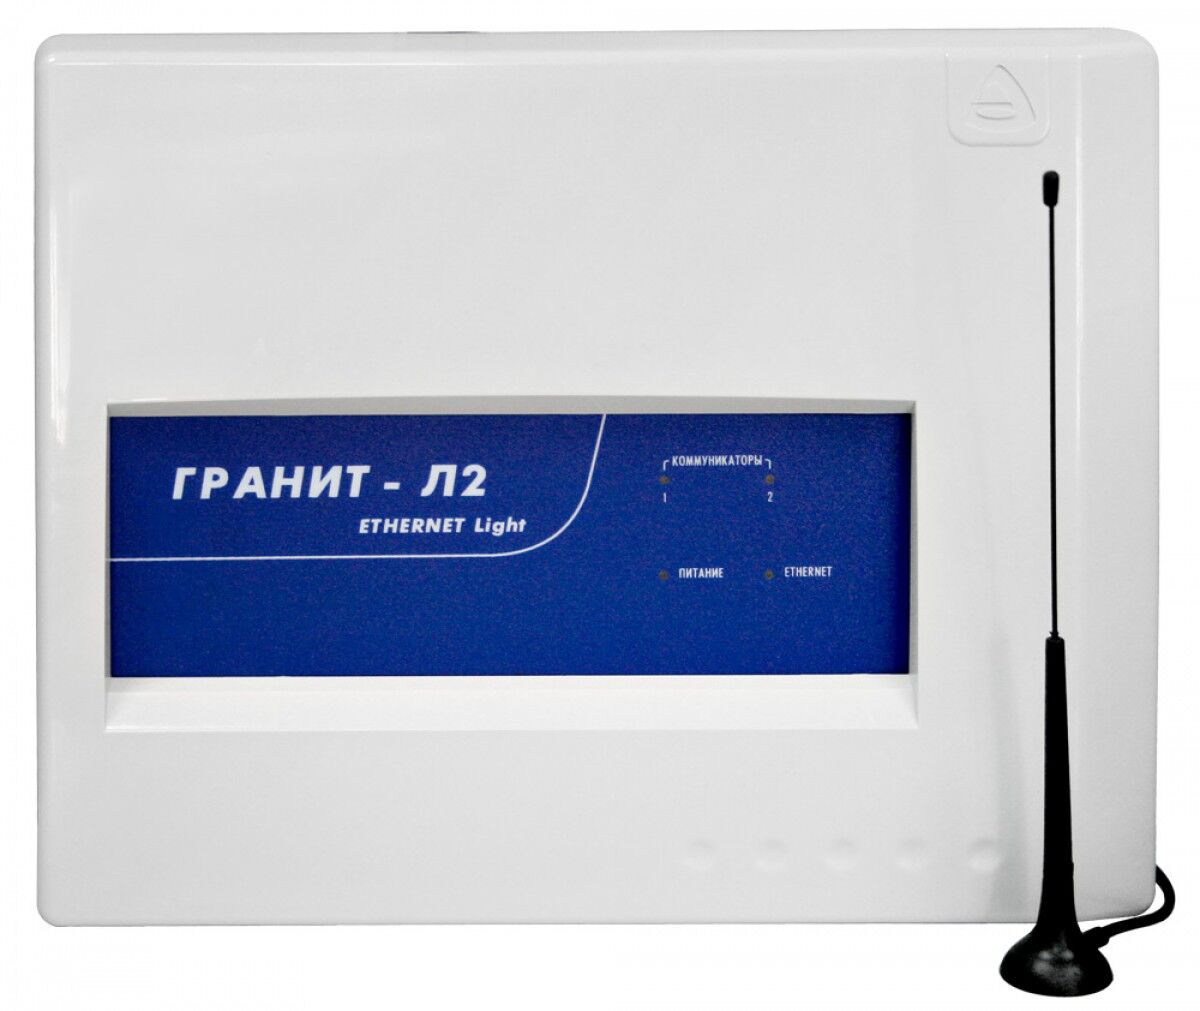 Оборудование для охранно-пожарной сигнализации Сибирский арсенал Гранит-Л2 ETHERNET LIGHT